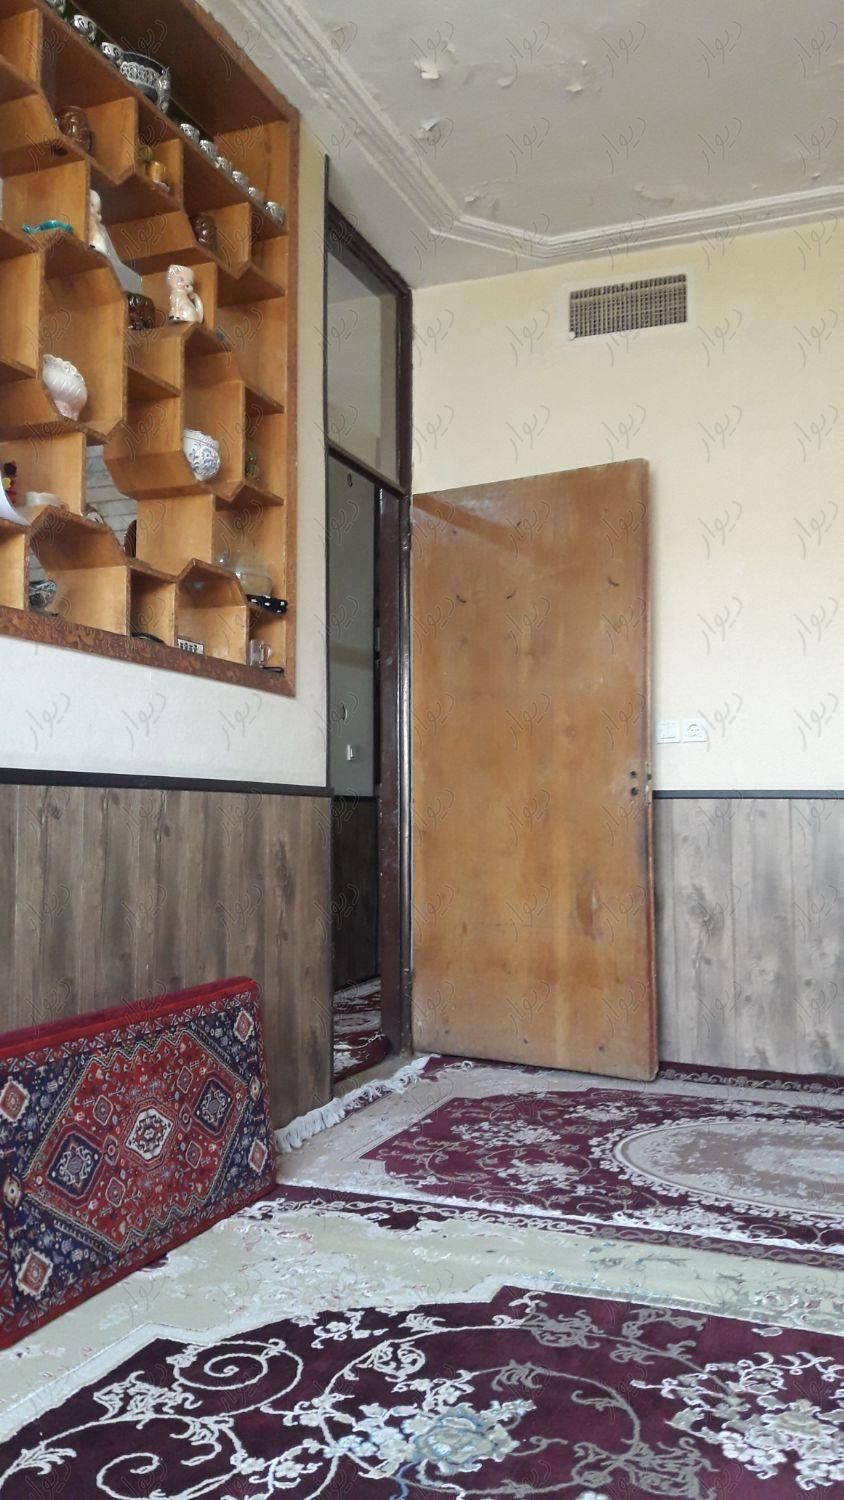 خانه حیاط دار دو خوابه|فروش خانه و ویلا|شیراز, قلعه شاهزاده بیگم|دیوار